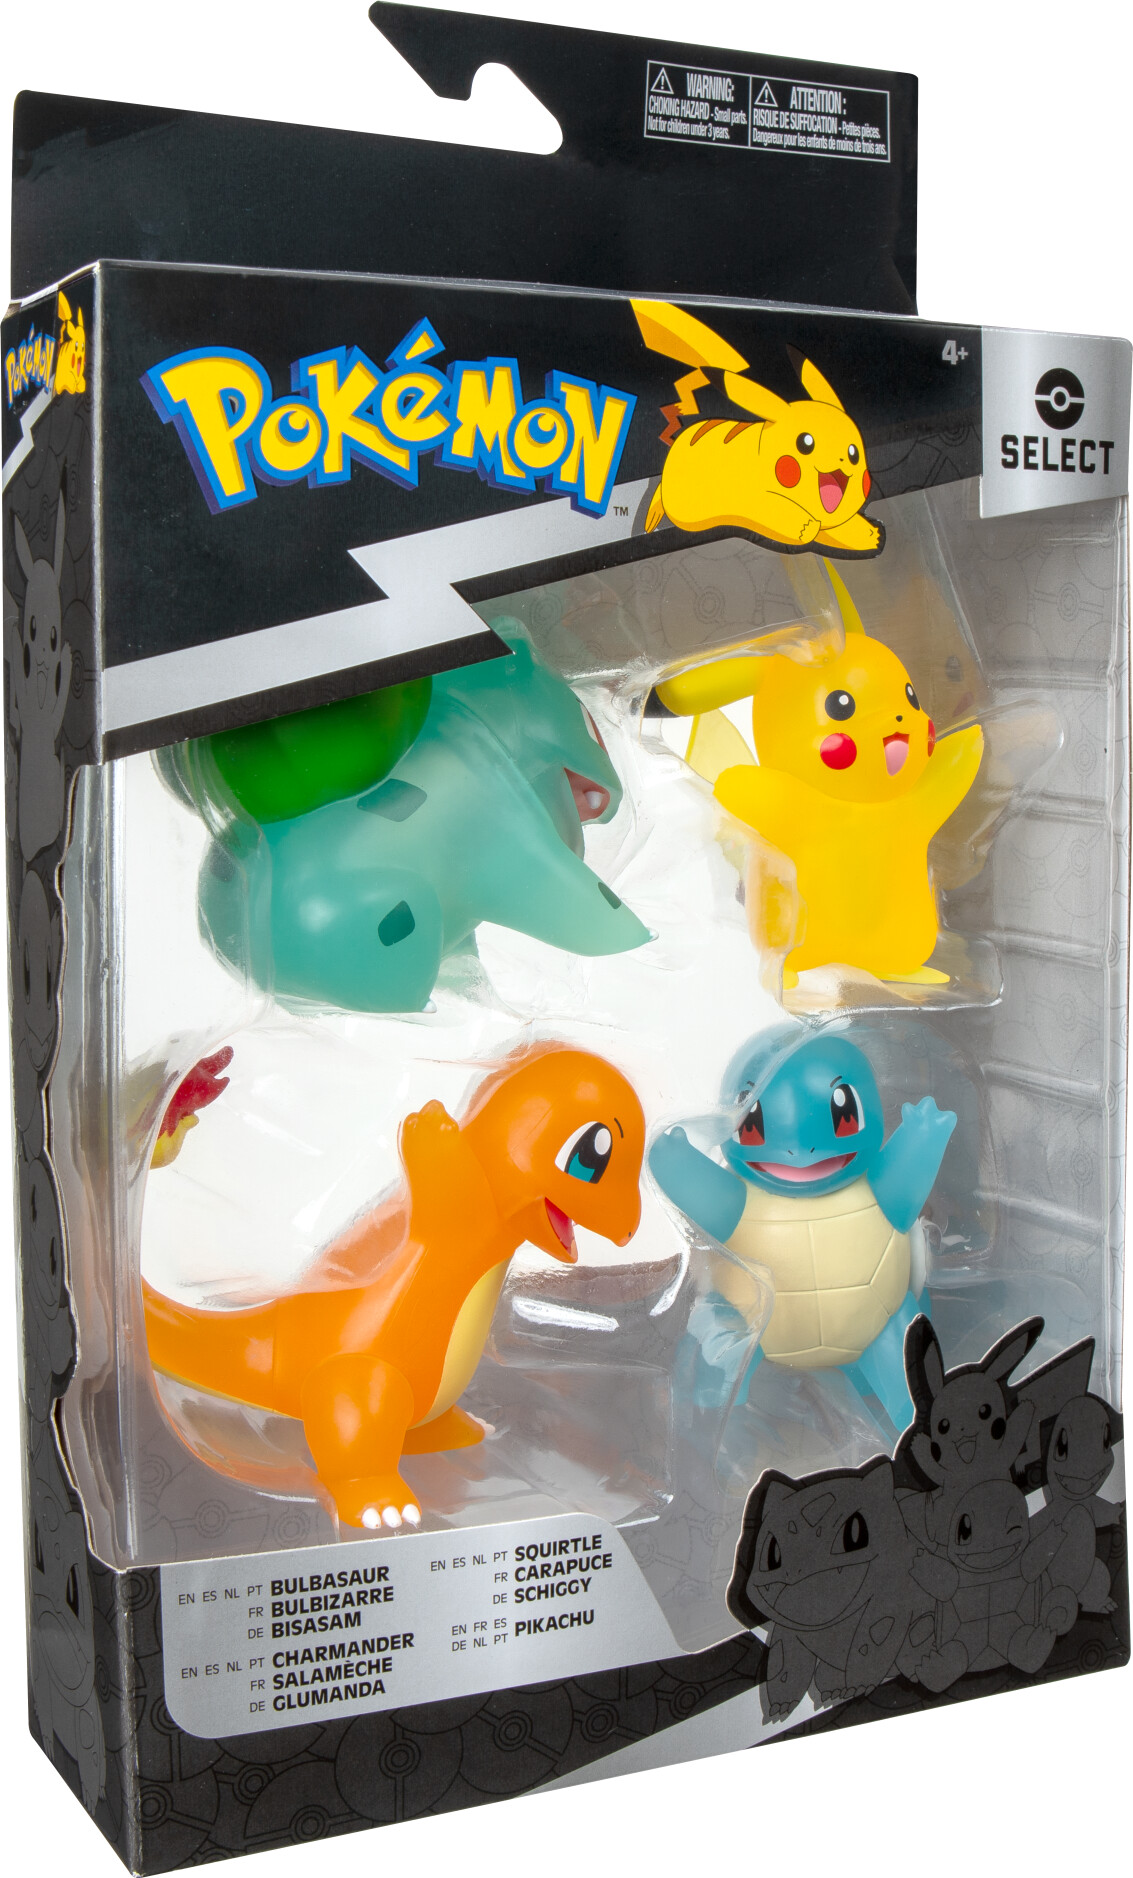 #3 - Pokémon Figurer - Pikachu, Charmander, Squirtle Og Bulbasaur